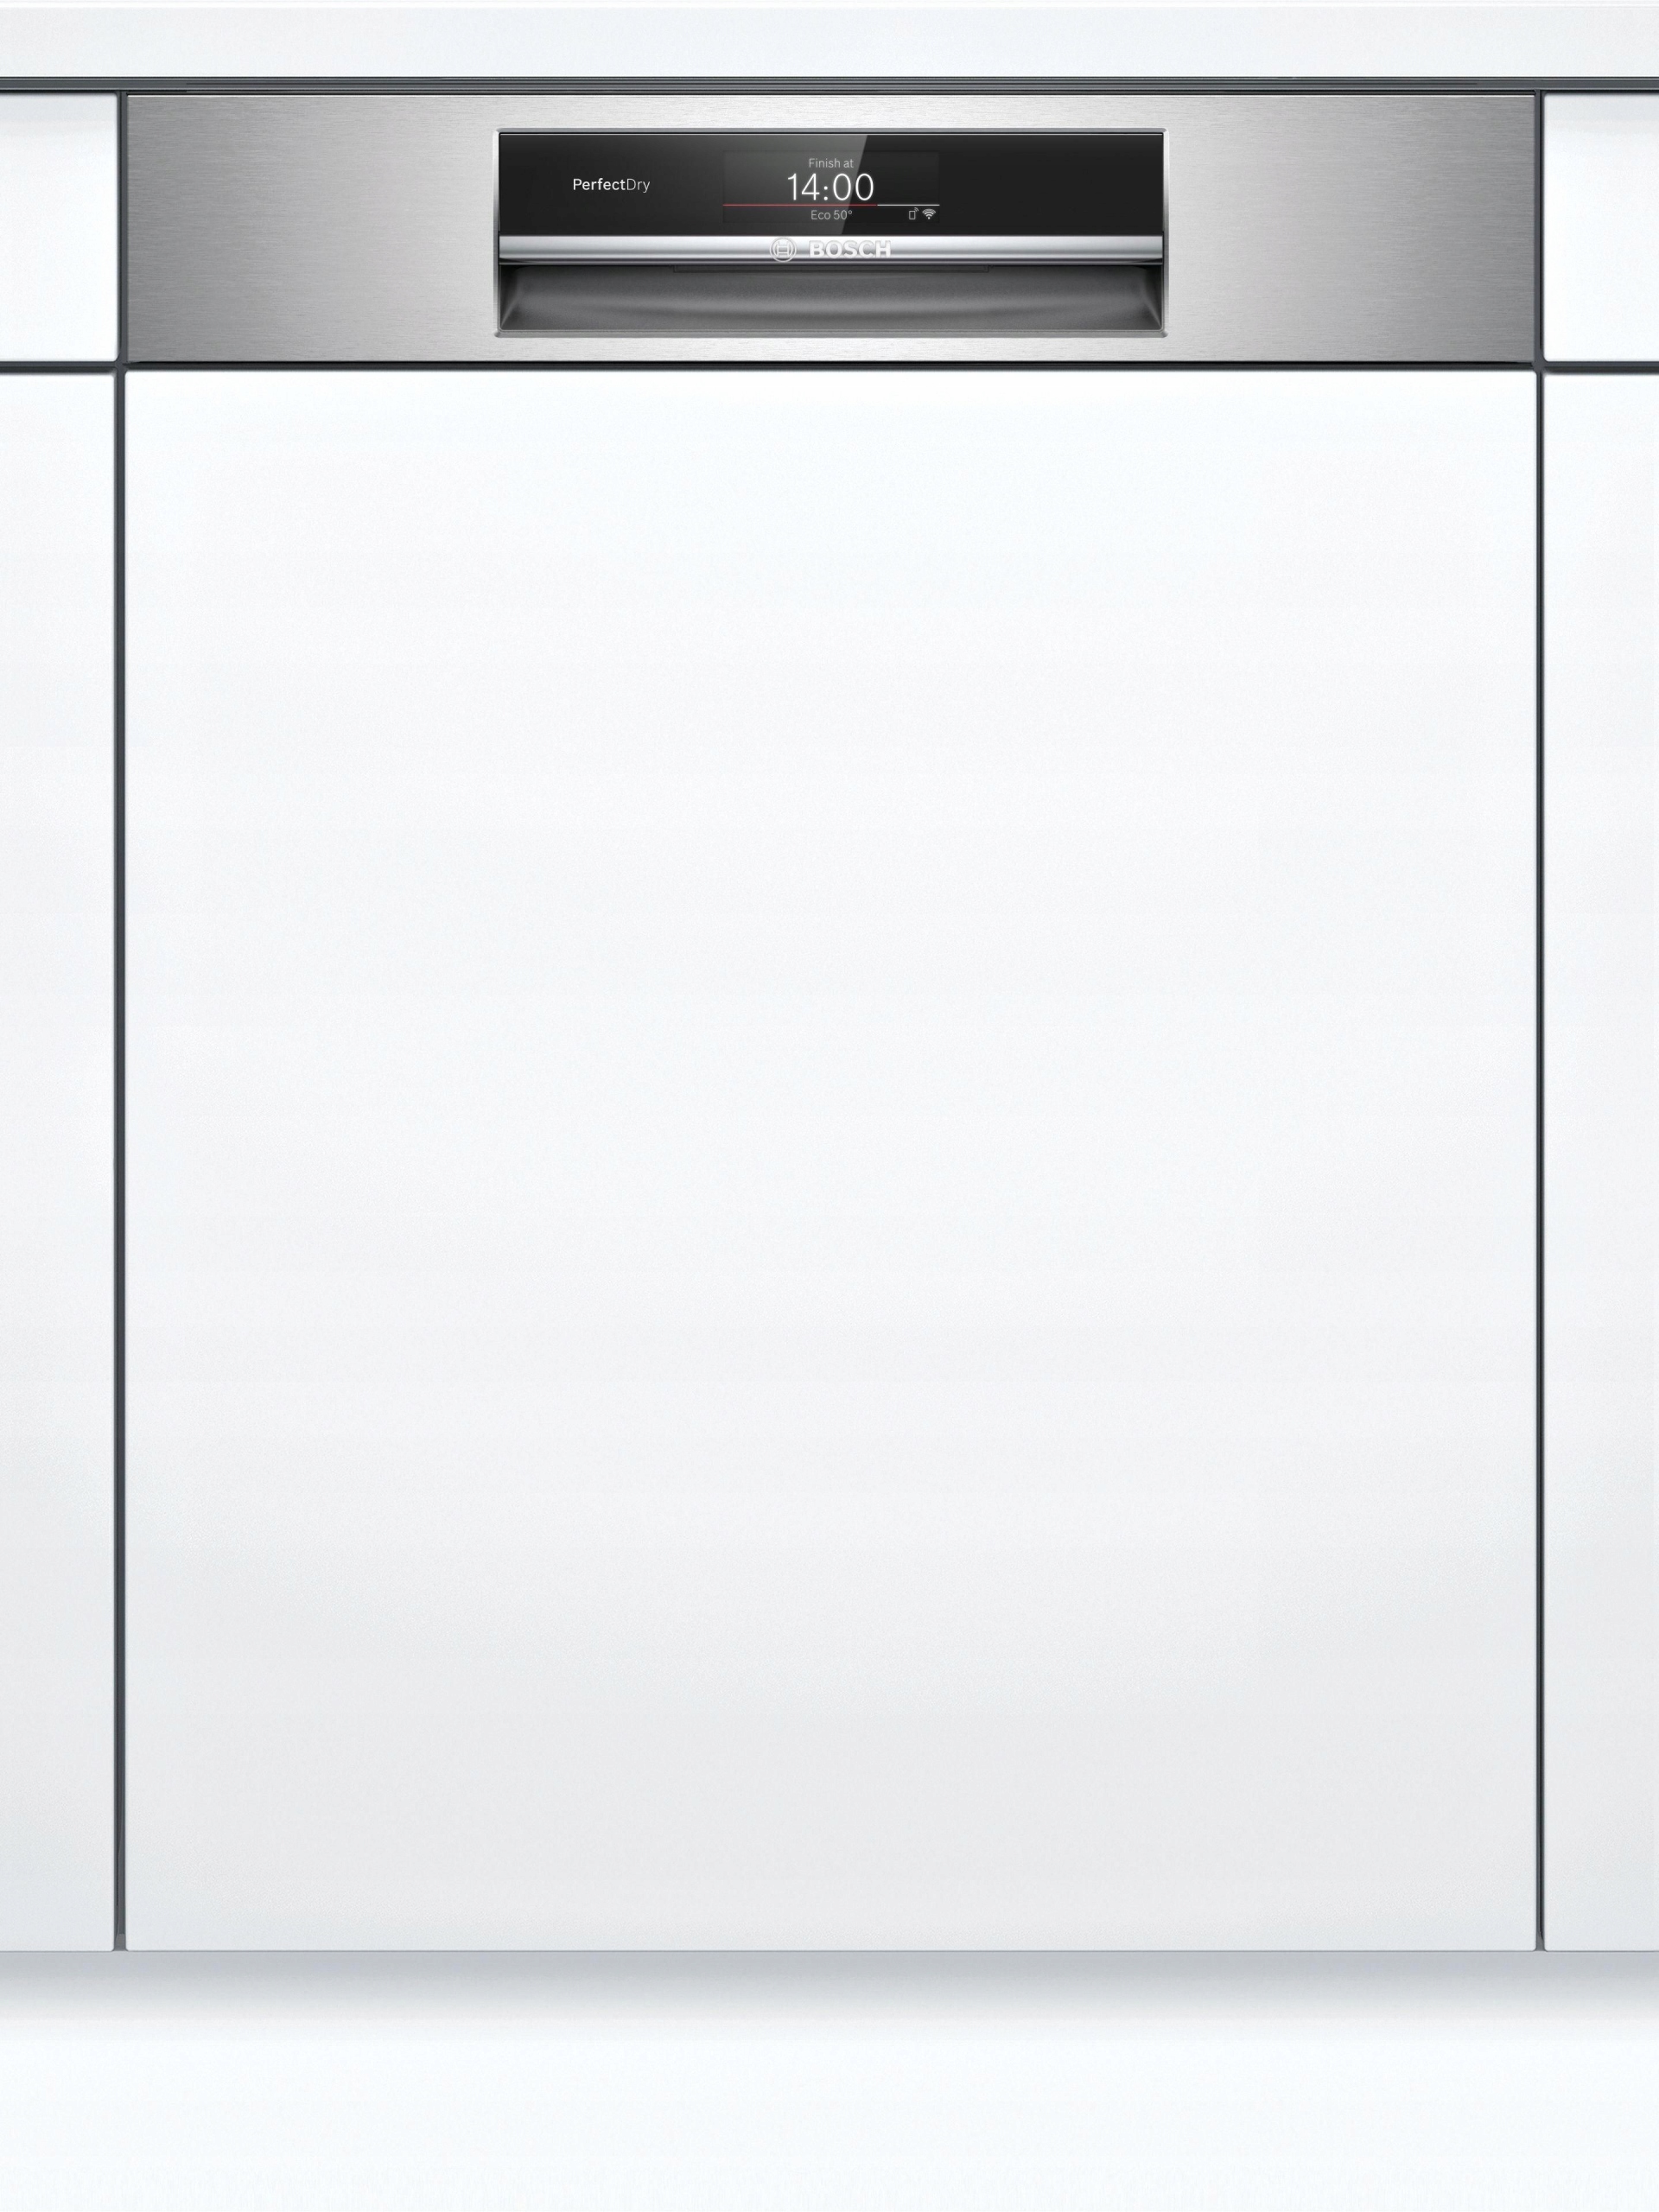 Встраиваемая посудомоечная машина bosch silence. Посудомоечная машина Bosch SMI 25as02 e. Встраиваемая посудомоечная машина Bosch smi50d05tr. Посудомоечная машина Bosch SPI 69t35. Посудомоечная машина Siemens SN 536s03 ie.